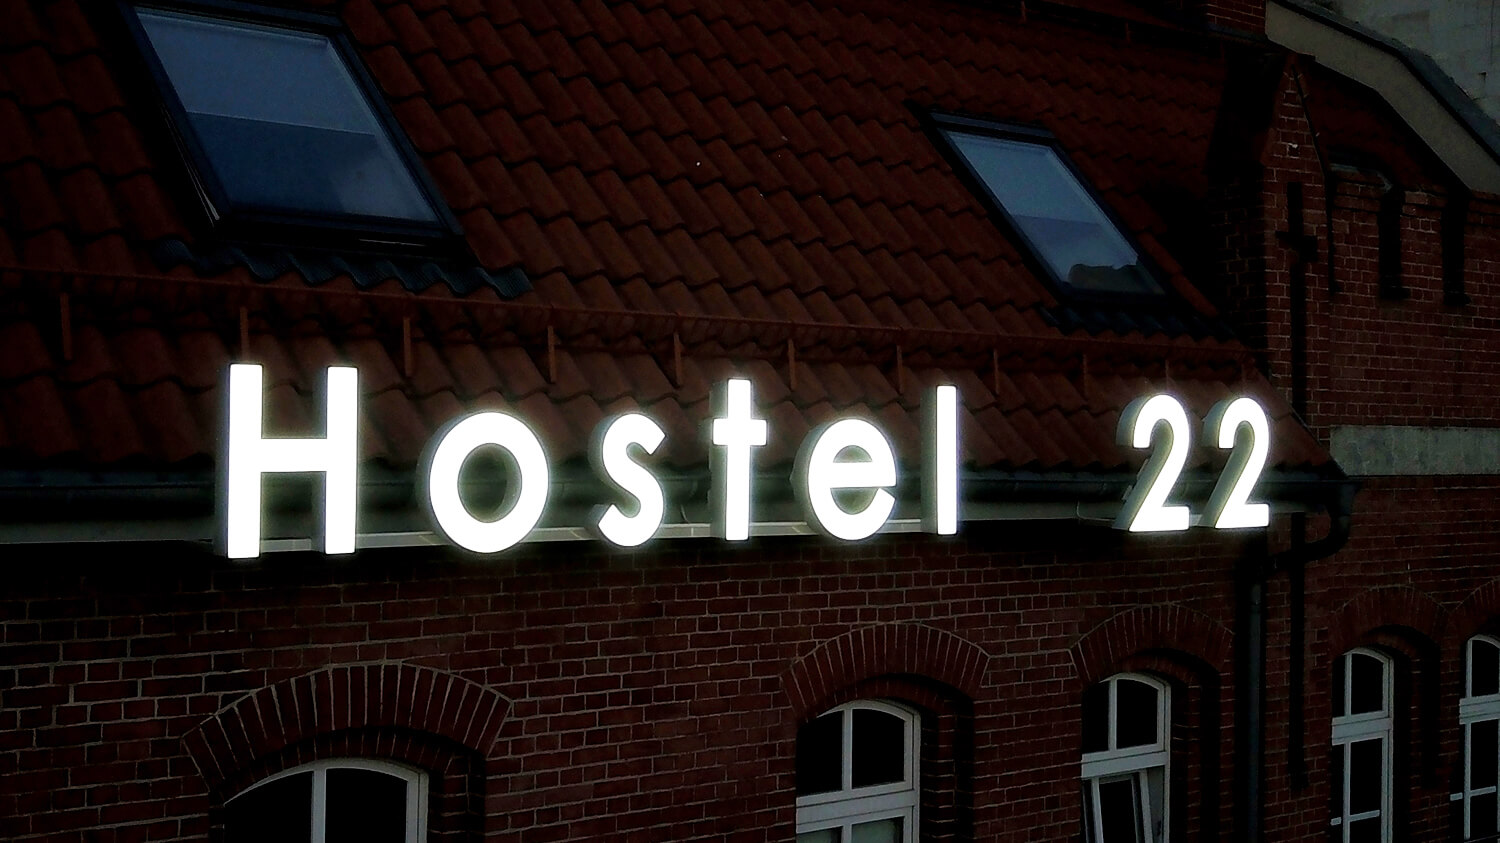 Hostel 22 - Hostel 22 - przestrzenne litery świetlne umieszczone na ścianie